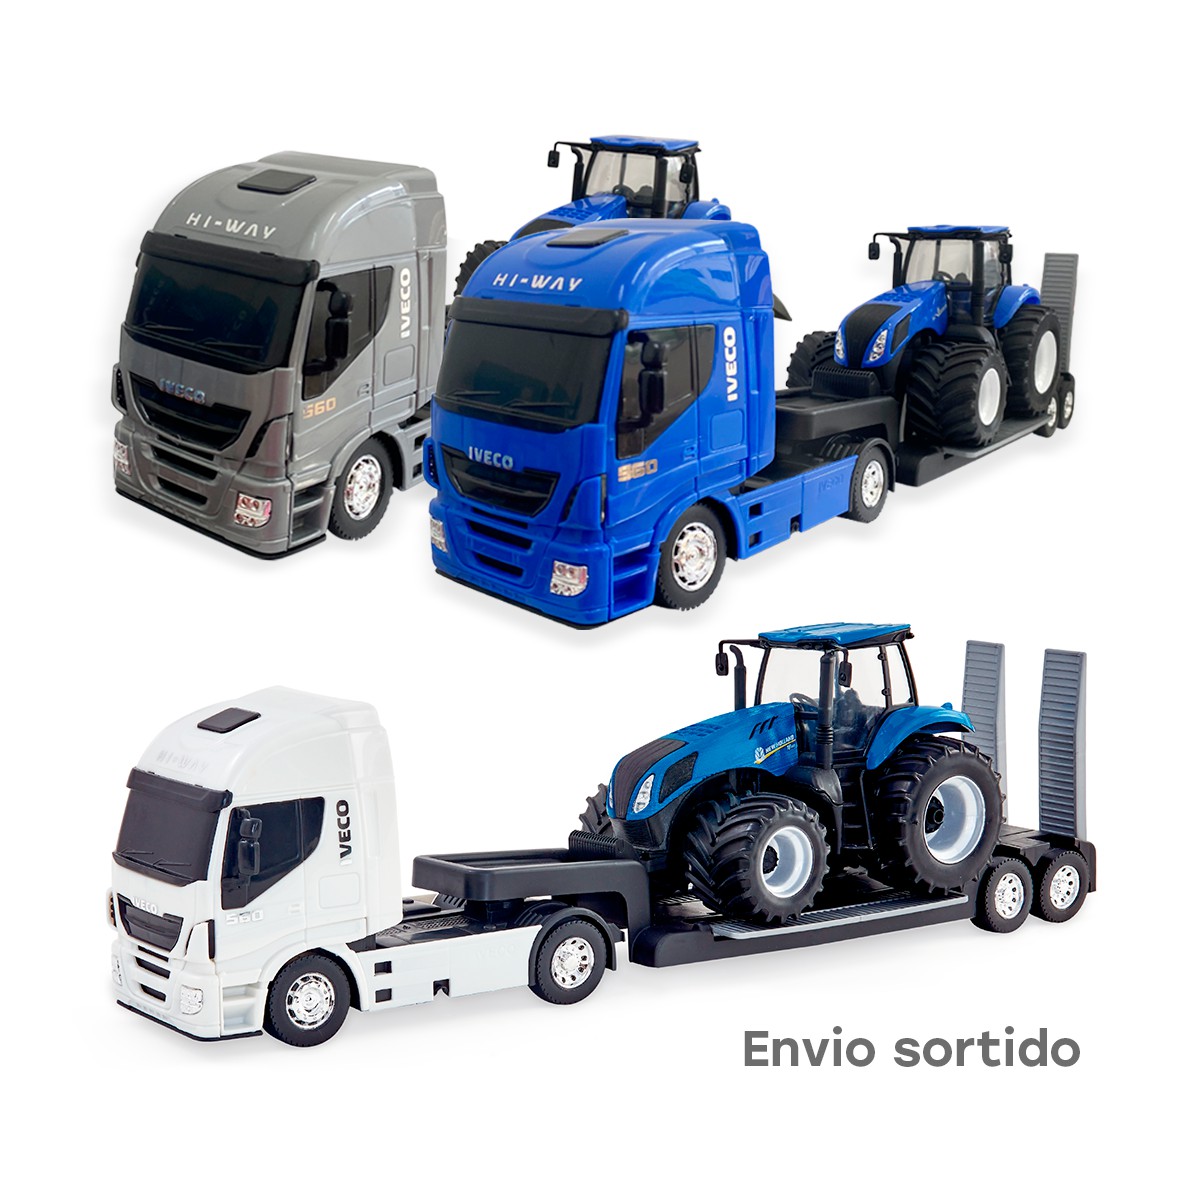 Brinquedo Caminhão Iveco C/ Empilhadeira Miniatura - Usual